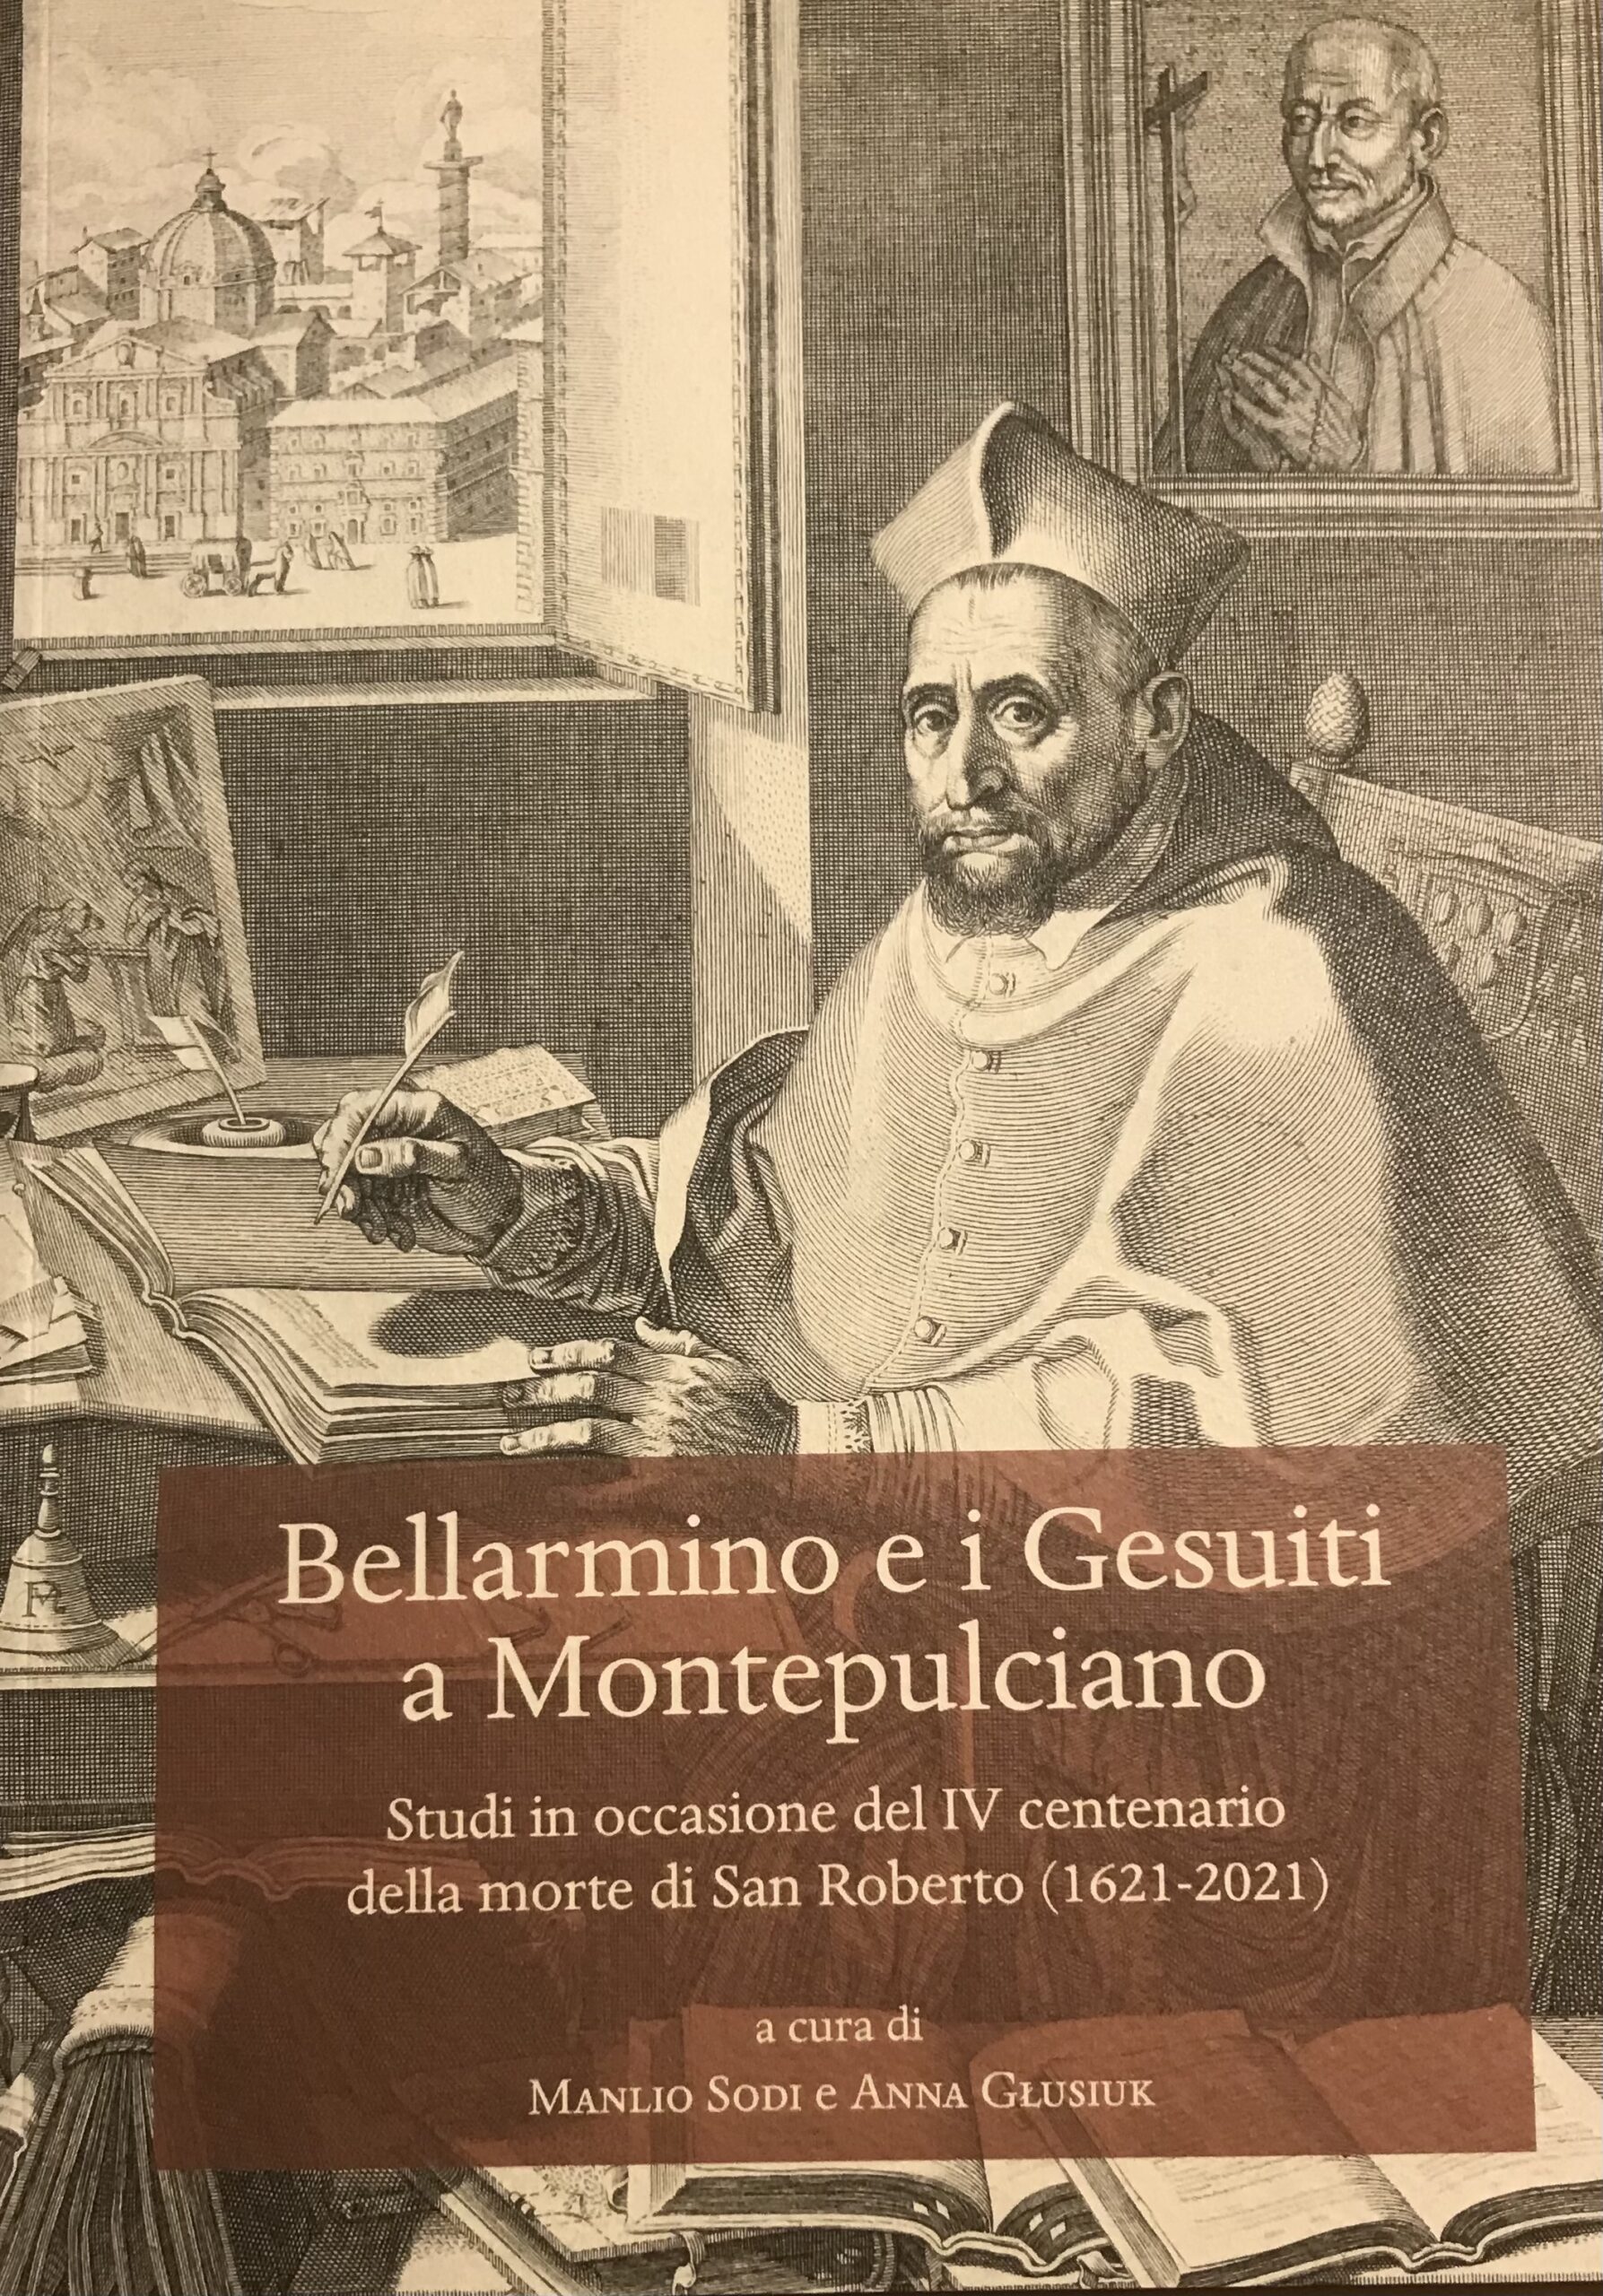 „Bellarmino e Gesuiti a Montepulciano 1621-2021, IV centenario della morte di san Roberto” – publikacja pod redakcją dr Anny Głusiuk